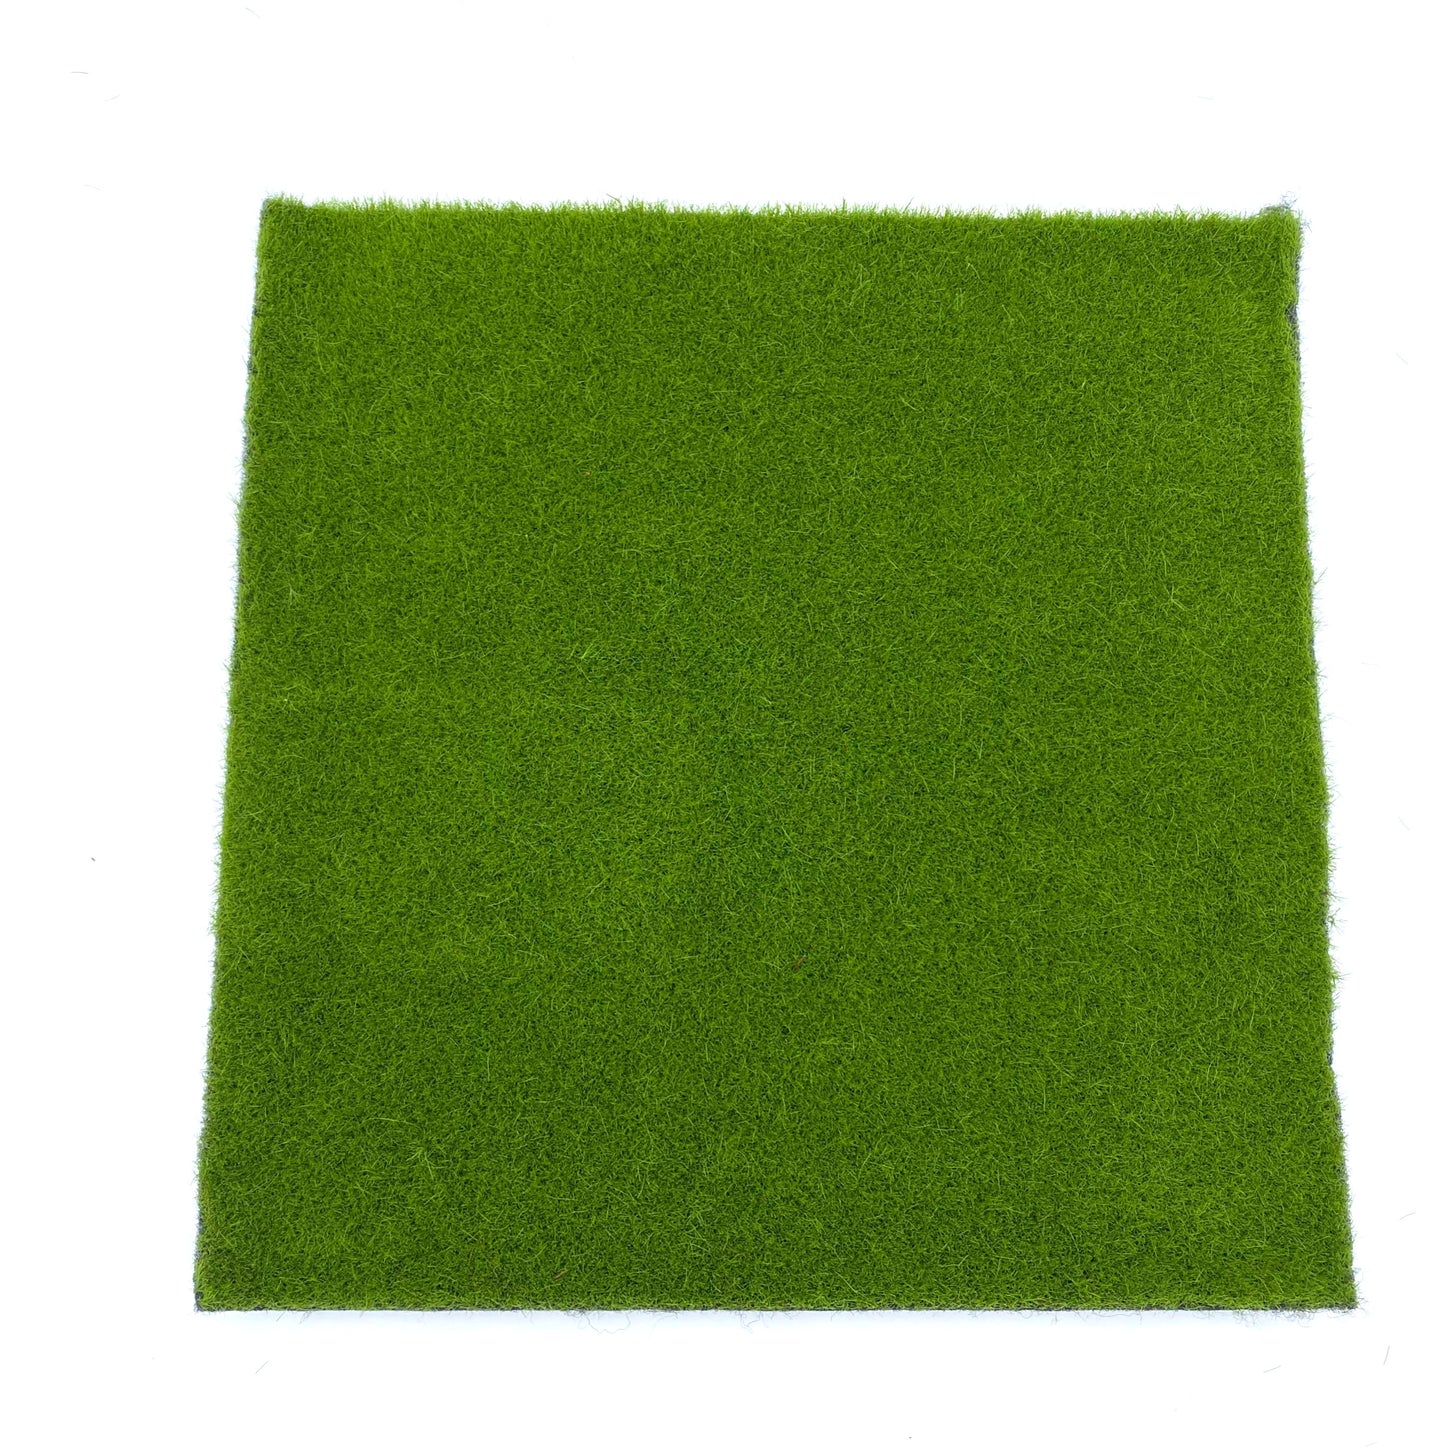 Fairy Garden Ever Green Artificial Moss / Grass Mat